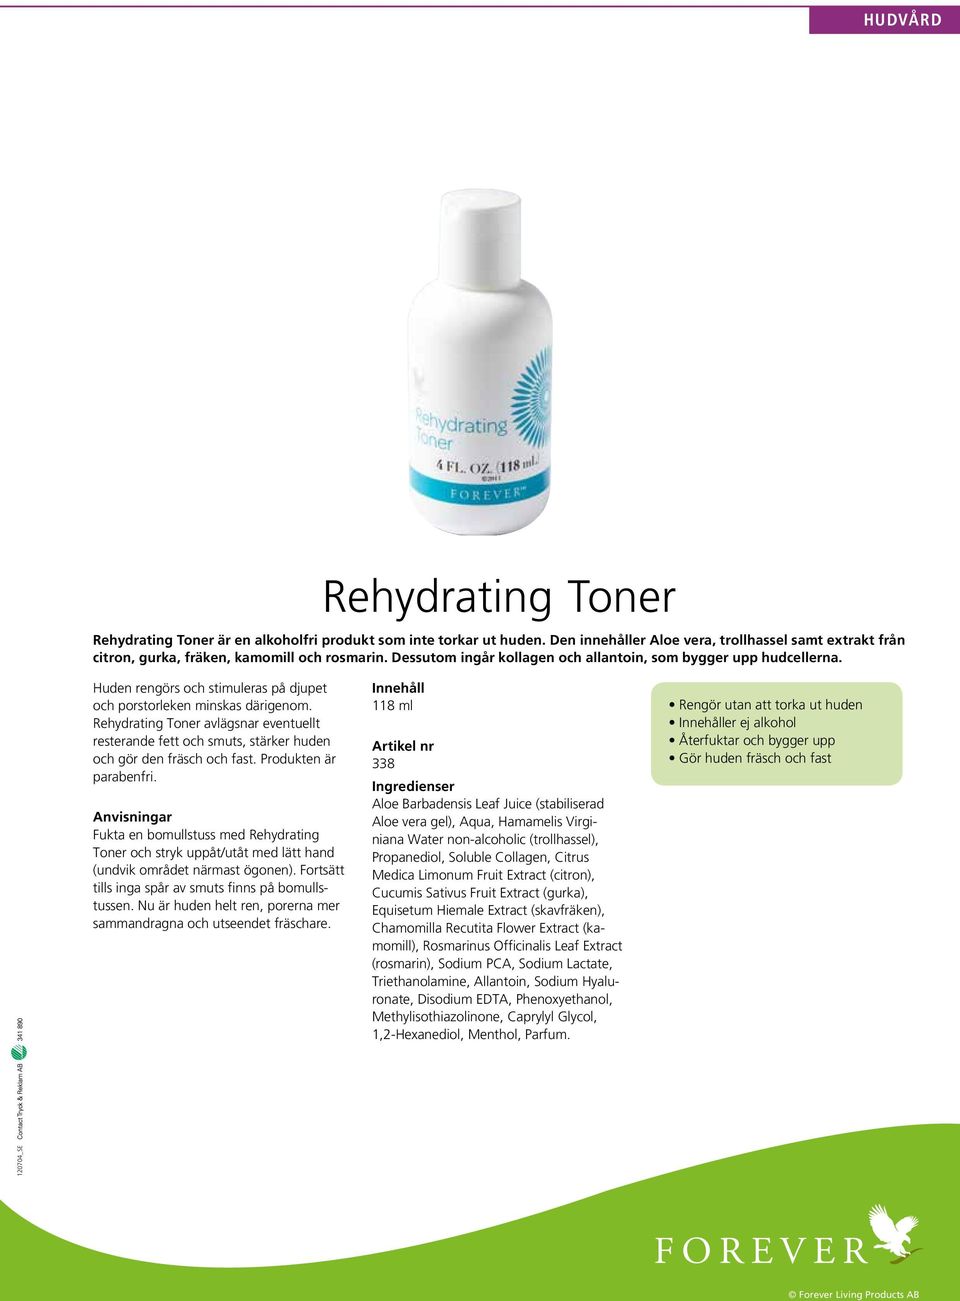 Rehydrating Toner avlägsnar eventuellt resterande fett och smuts, stärker huden och gör den fräsch och fast. Produkten är parabenfri.